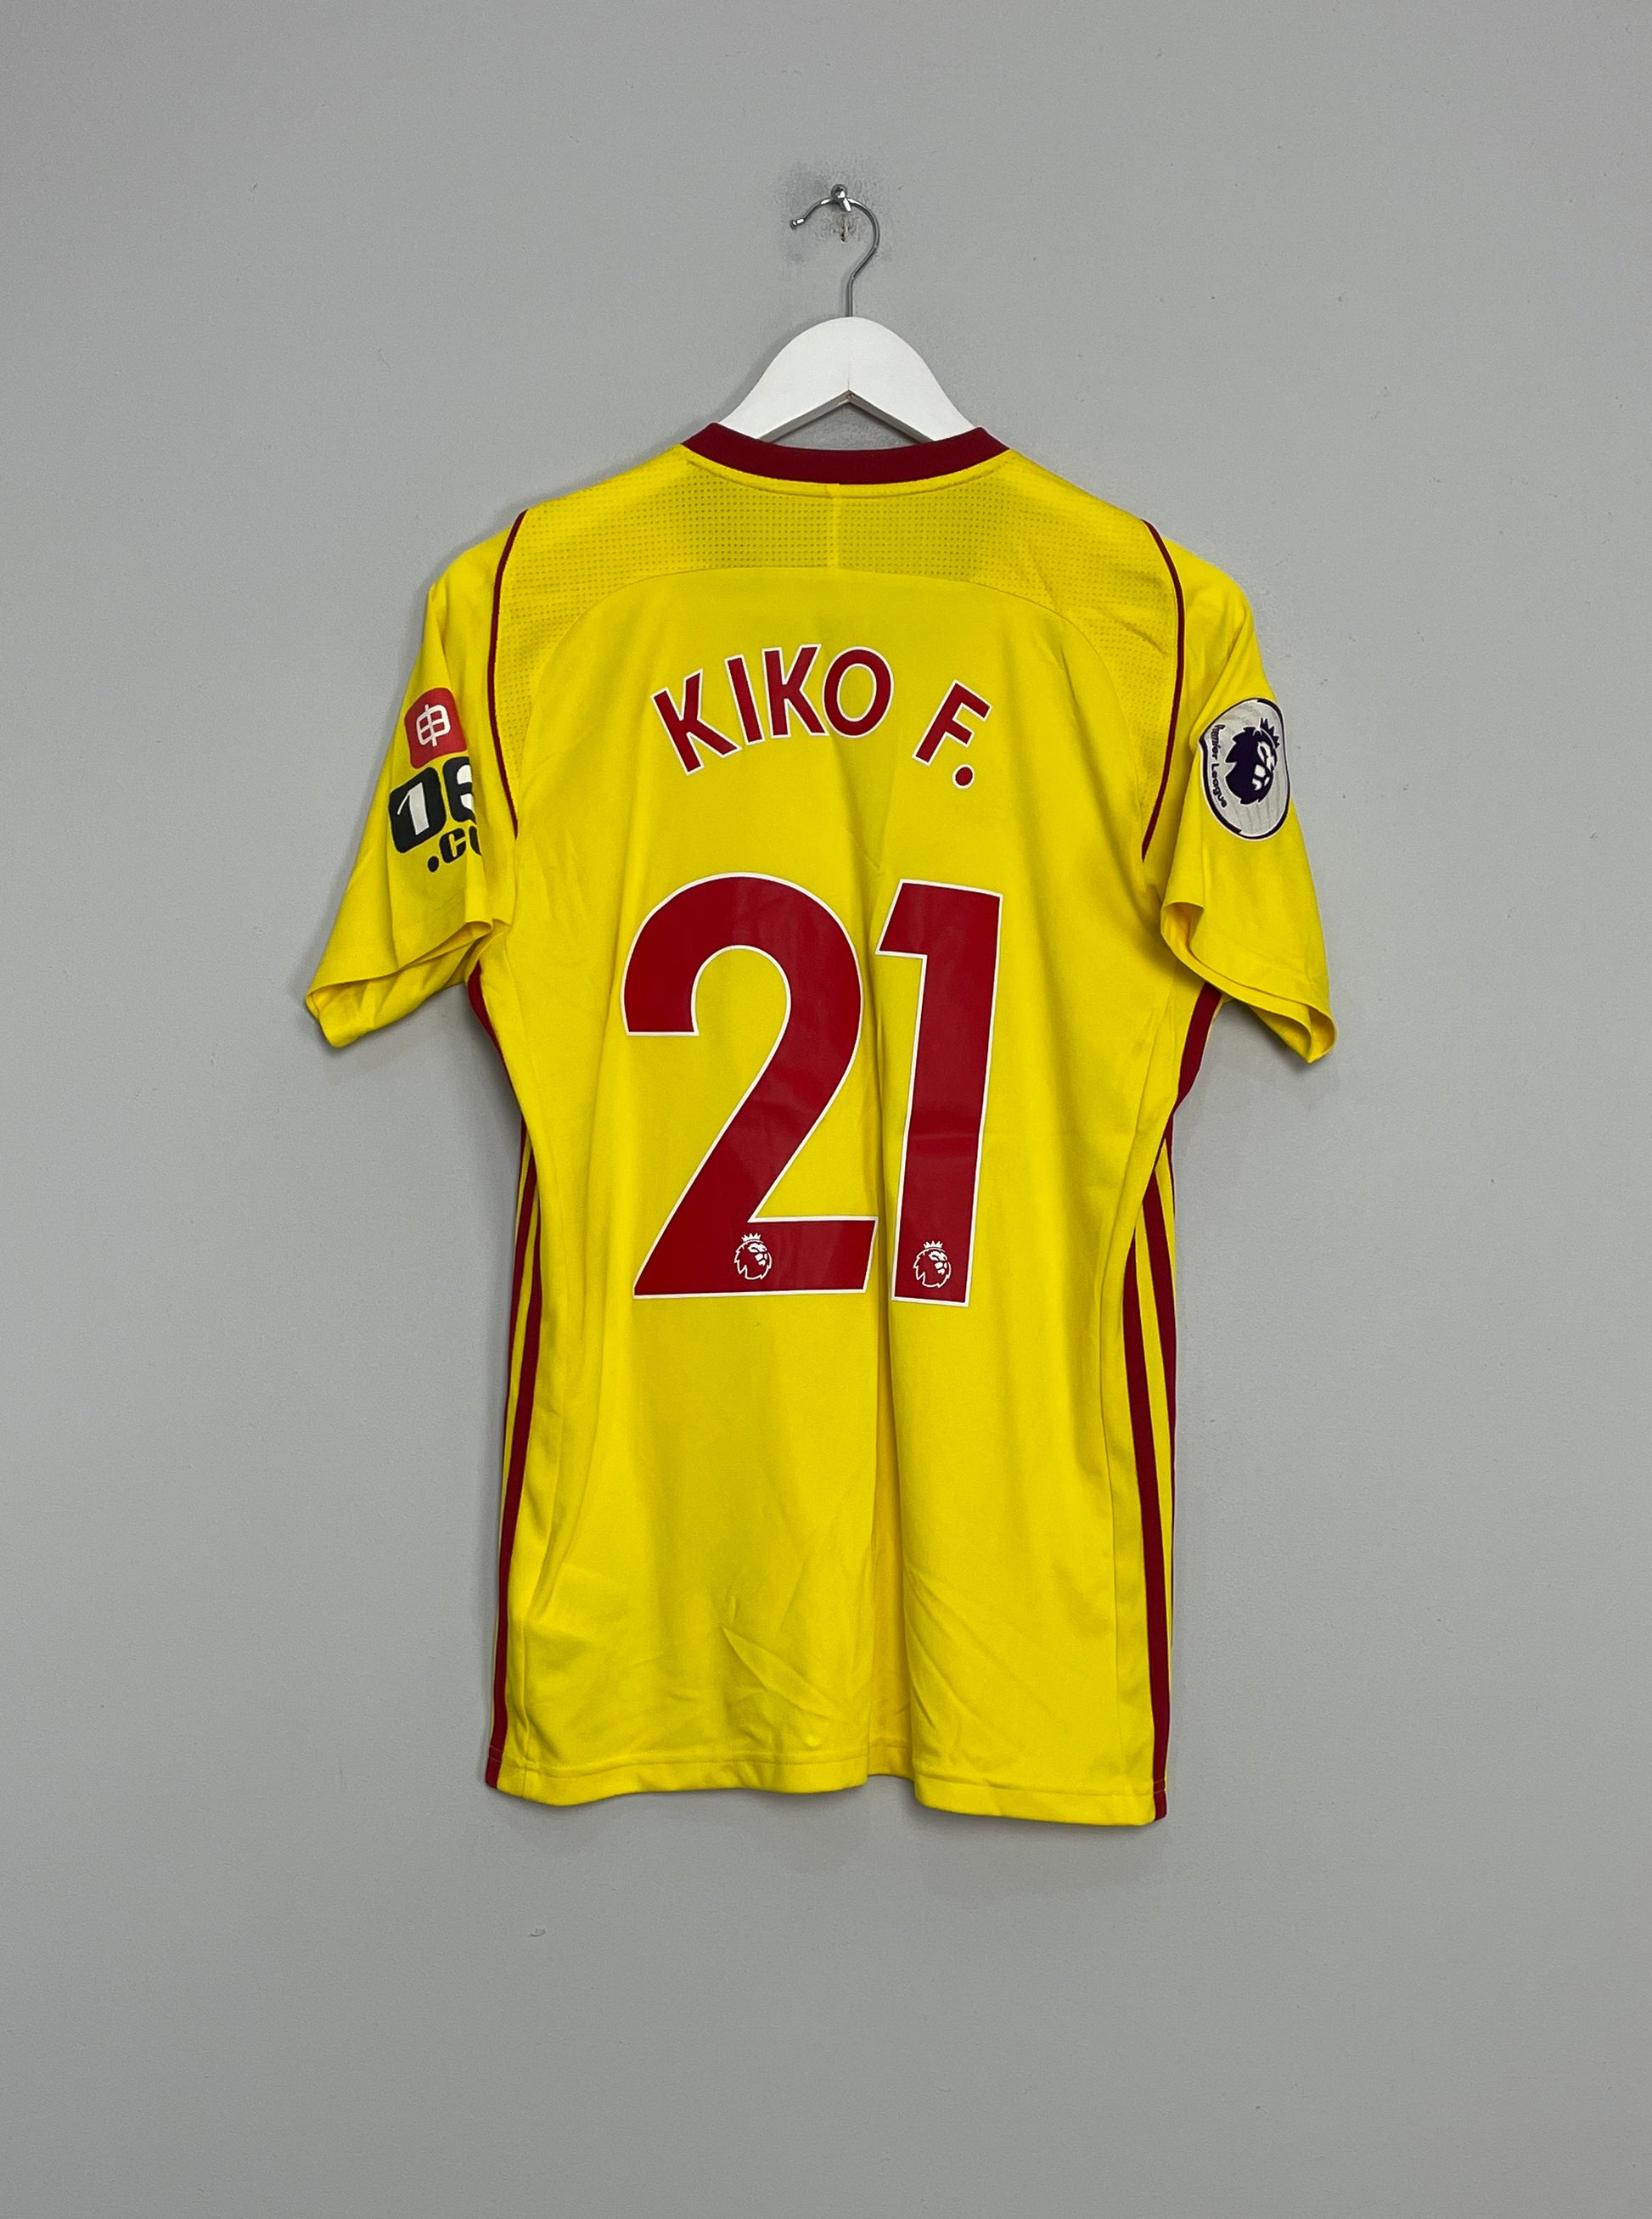 Image of the Watford Kiko shirt from the 2017/18 season